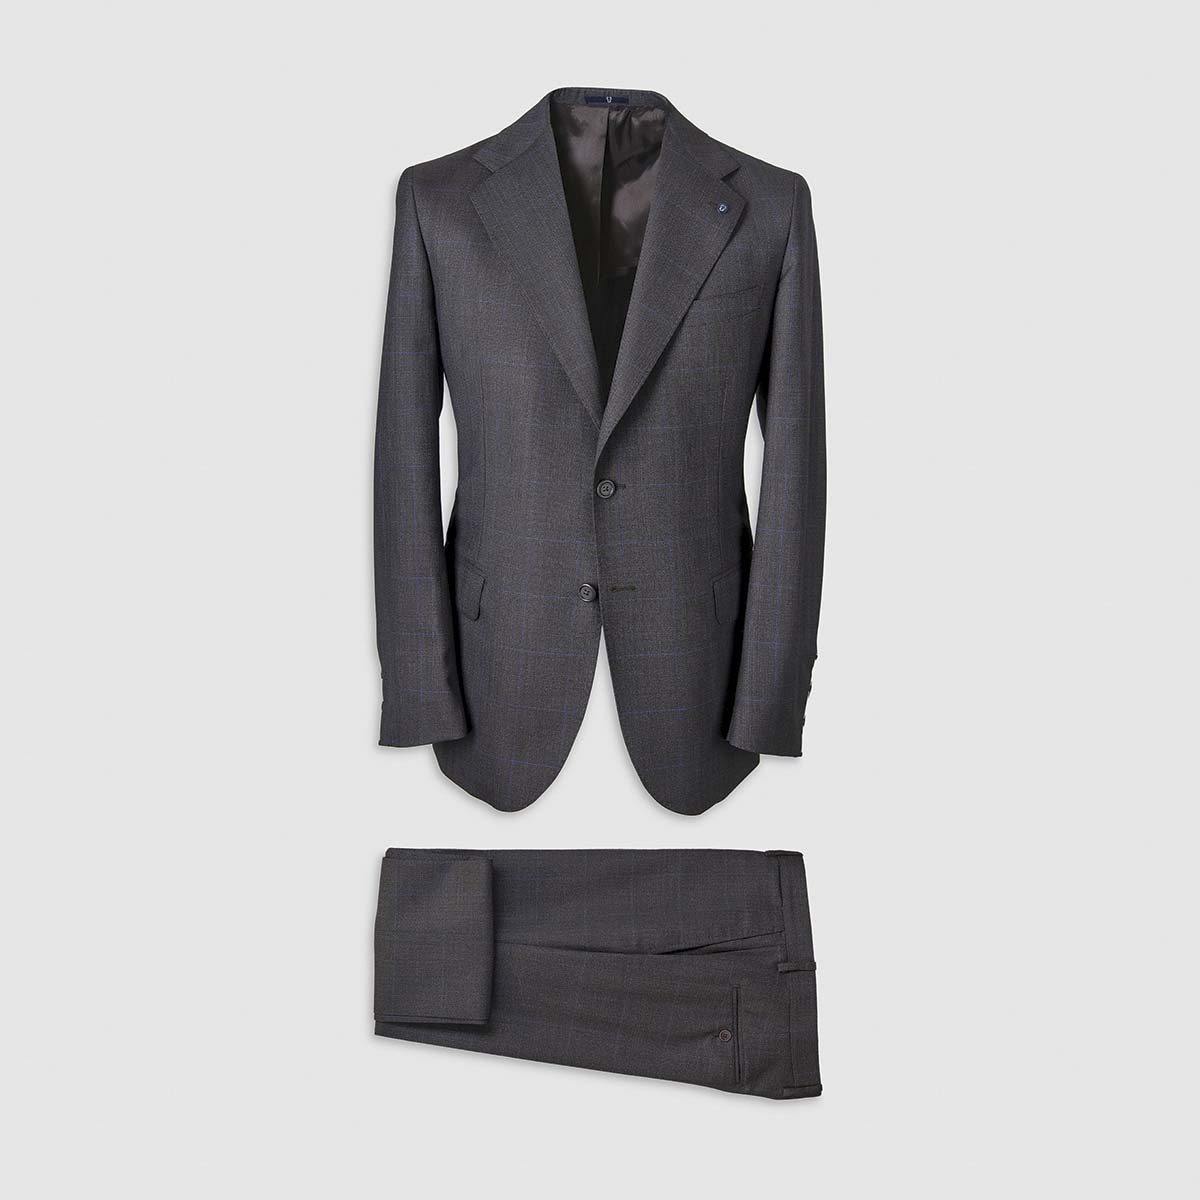 Dark Grey Windowpane Pattern Smart Suit in 130s  Four Seasons Wool Melillo 1970 on sale 2022